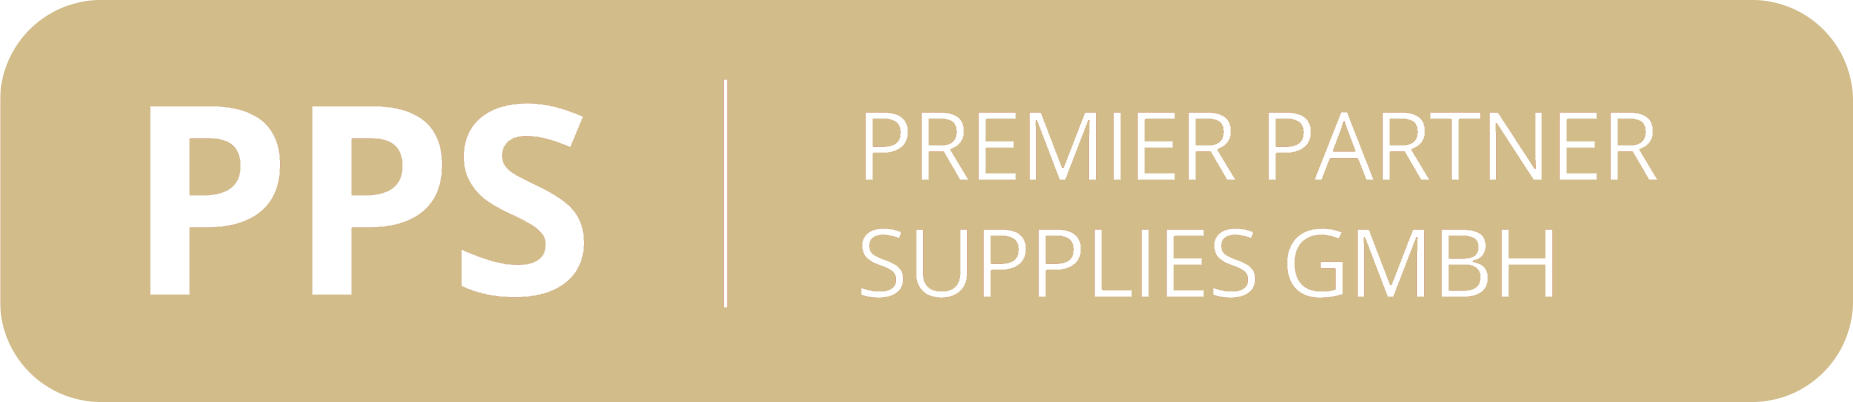 Premier Partner Supplies GmbH